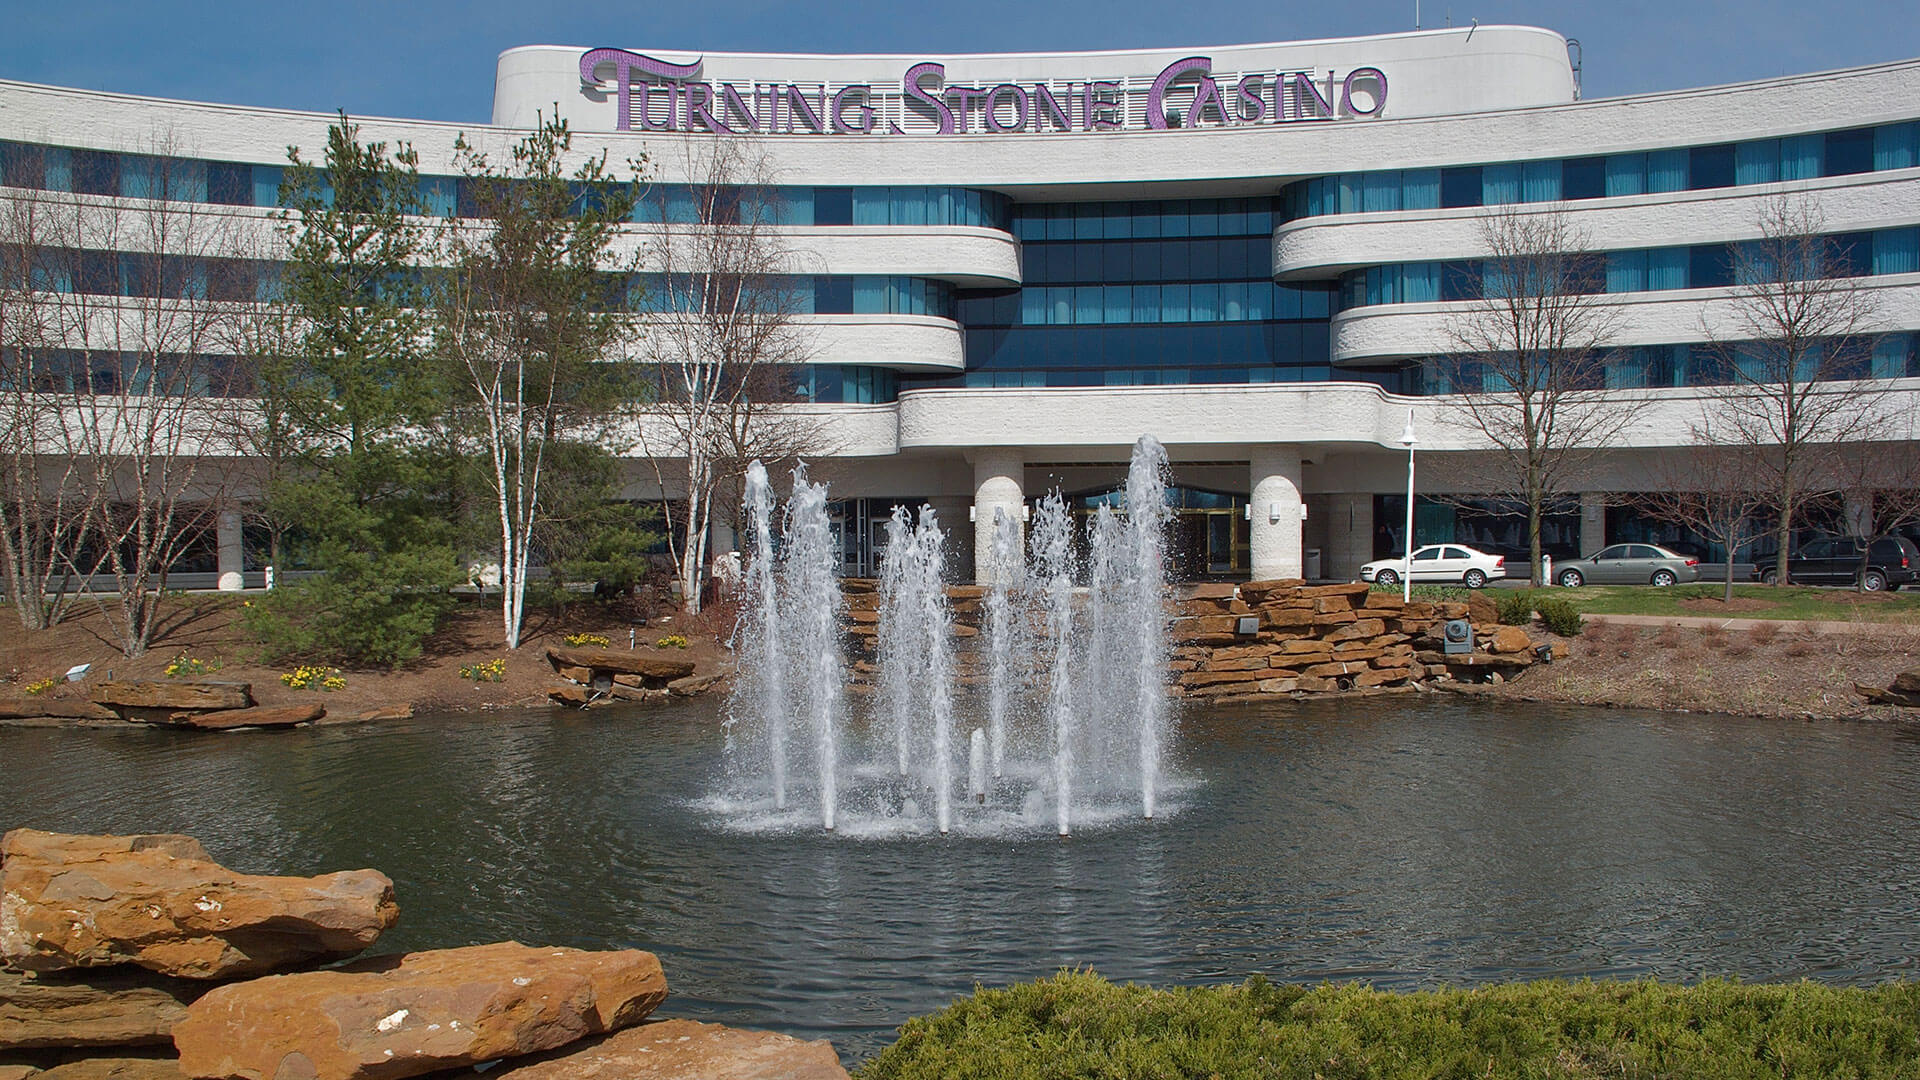 turning stone point casino layout